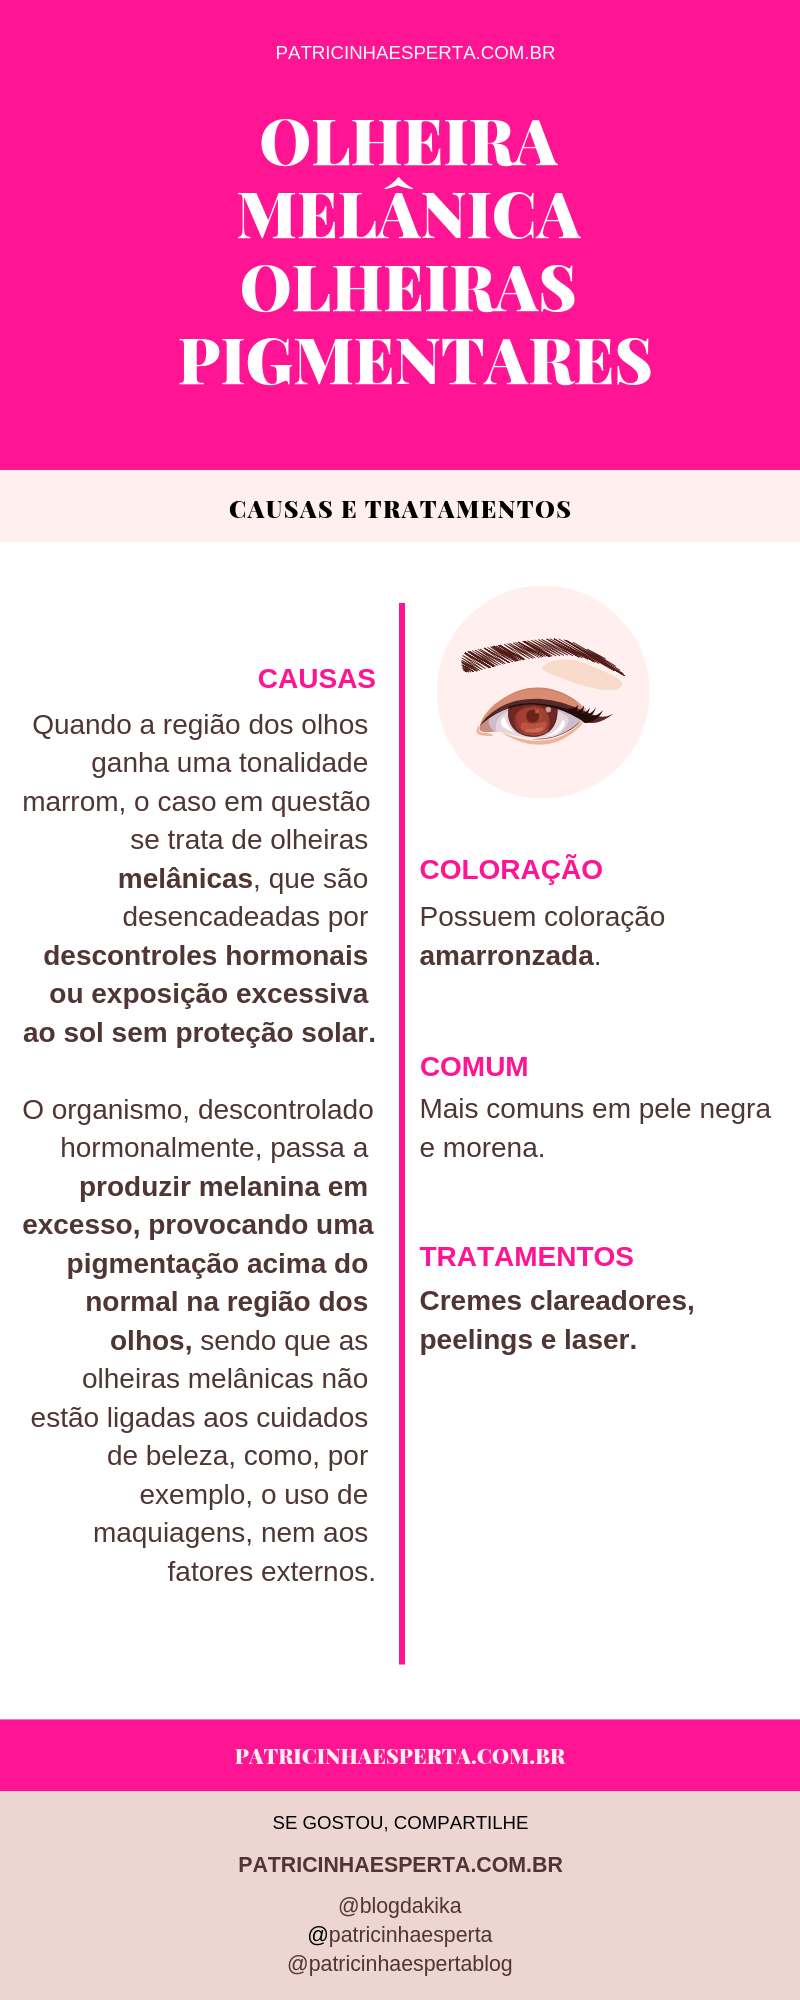 olheiras pigmentares - Como Tirar Olheiras - Tratamentos, Receitas Caseiras, Causas, Vídeos